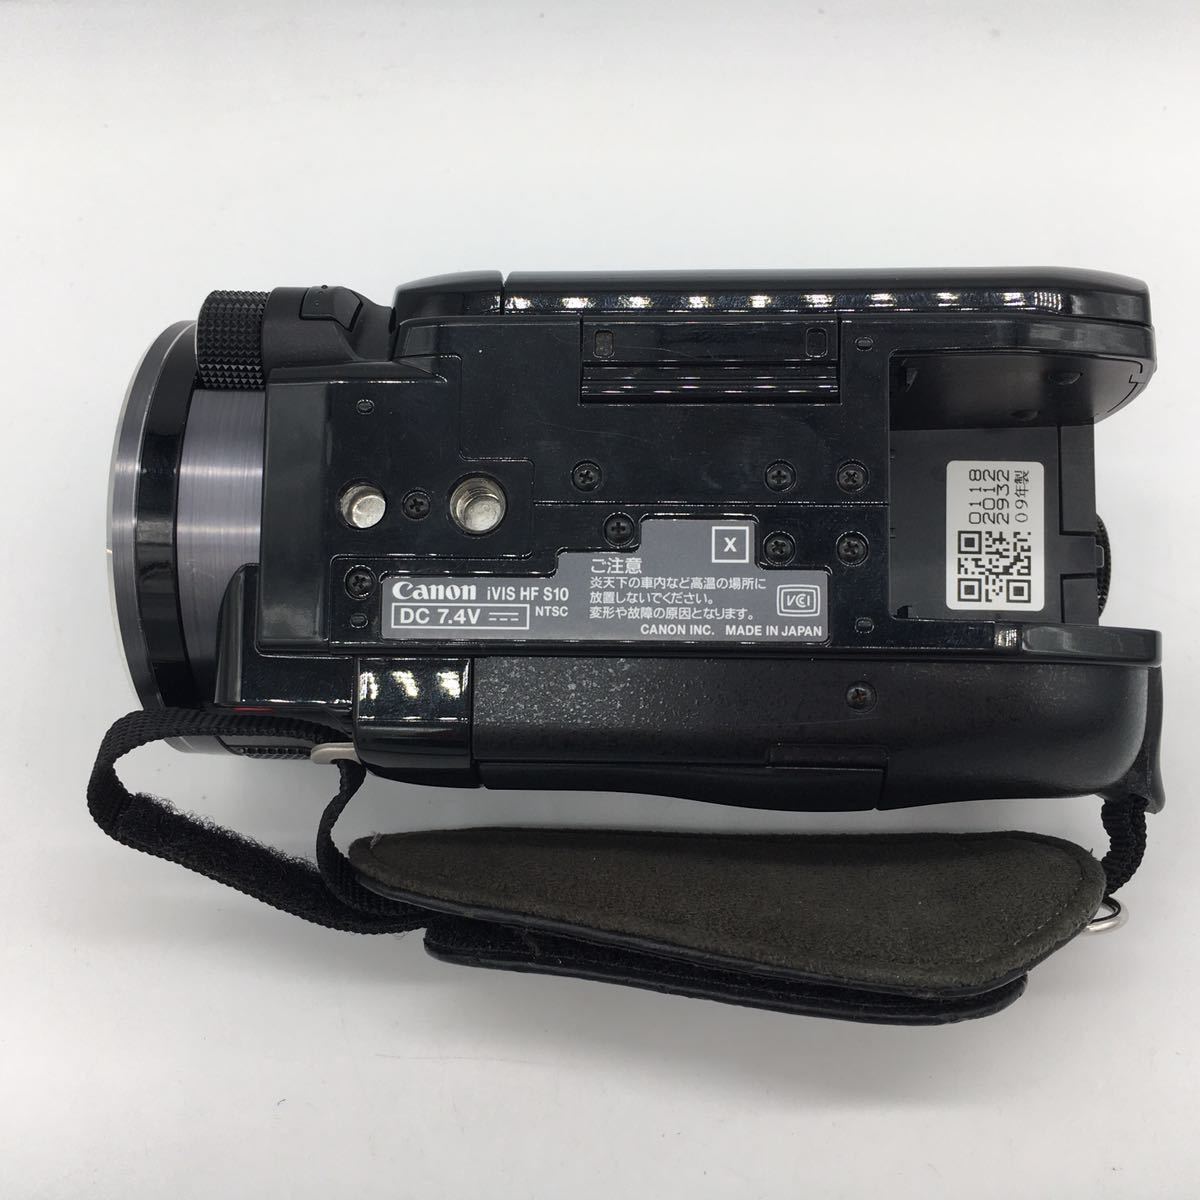 キヤノン CANON ビデオカメラ iVIS HF S10 バッテリー2個付属・充電器・リモコン・説明書付属 動作確認済み 現状品_画像8